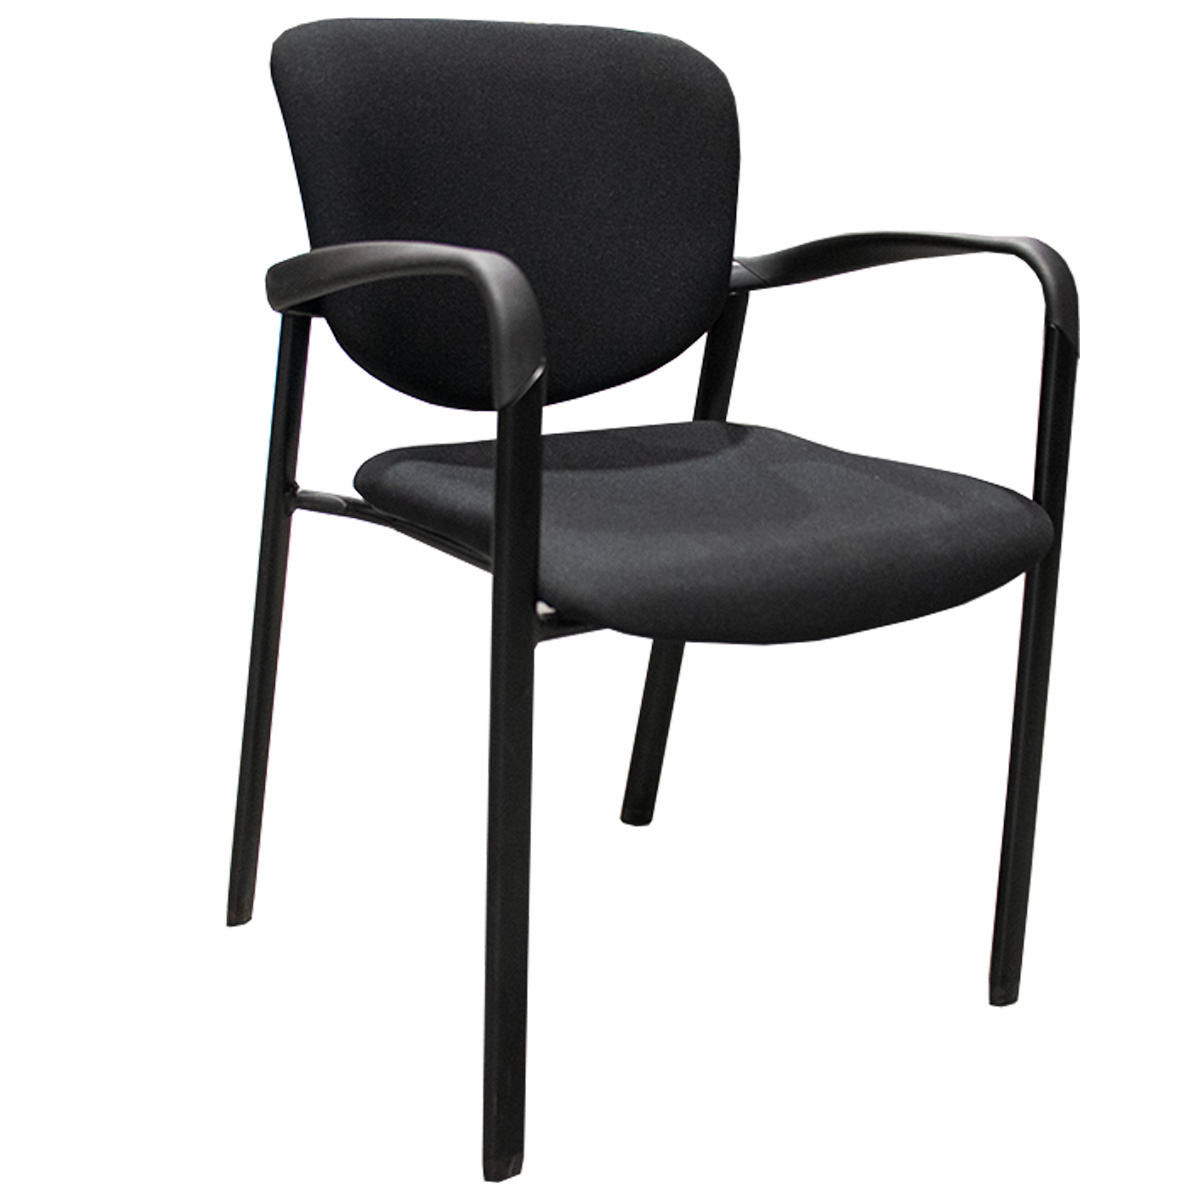 Haworth Improv Guest Chair In Black W/ Arms